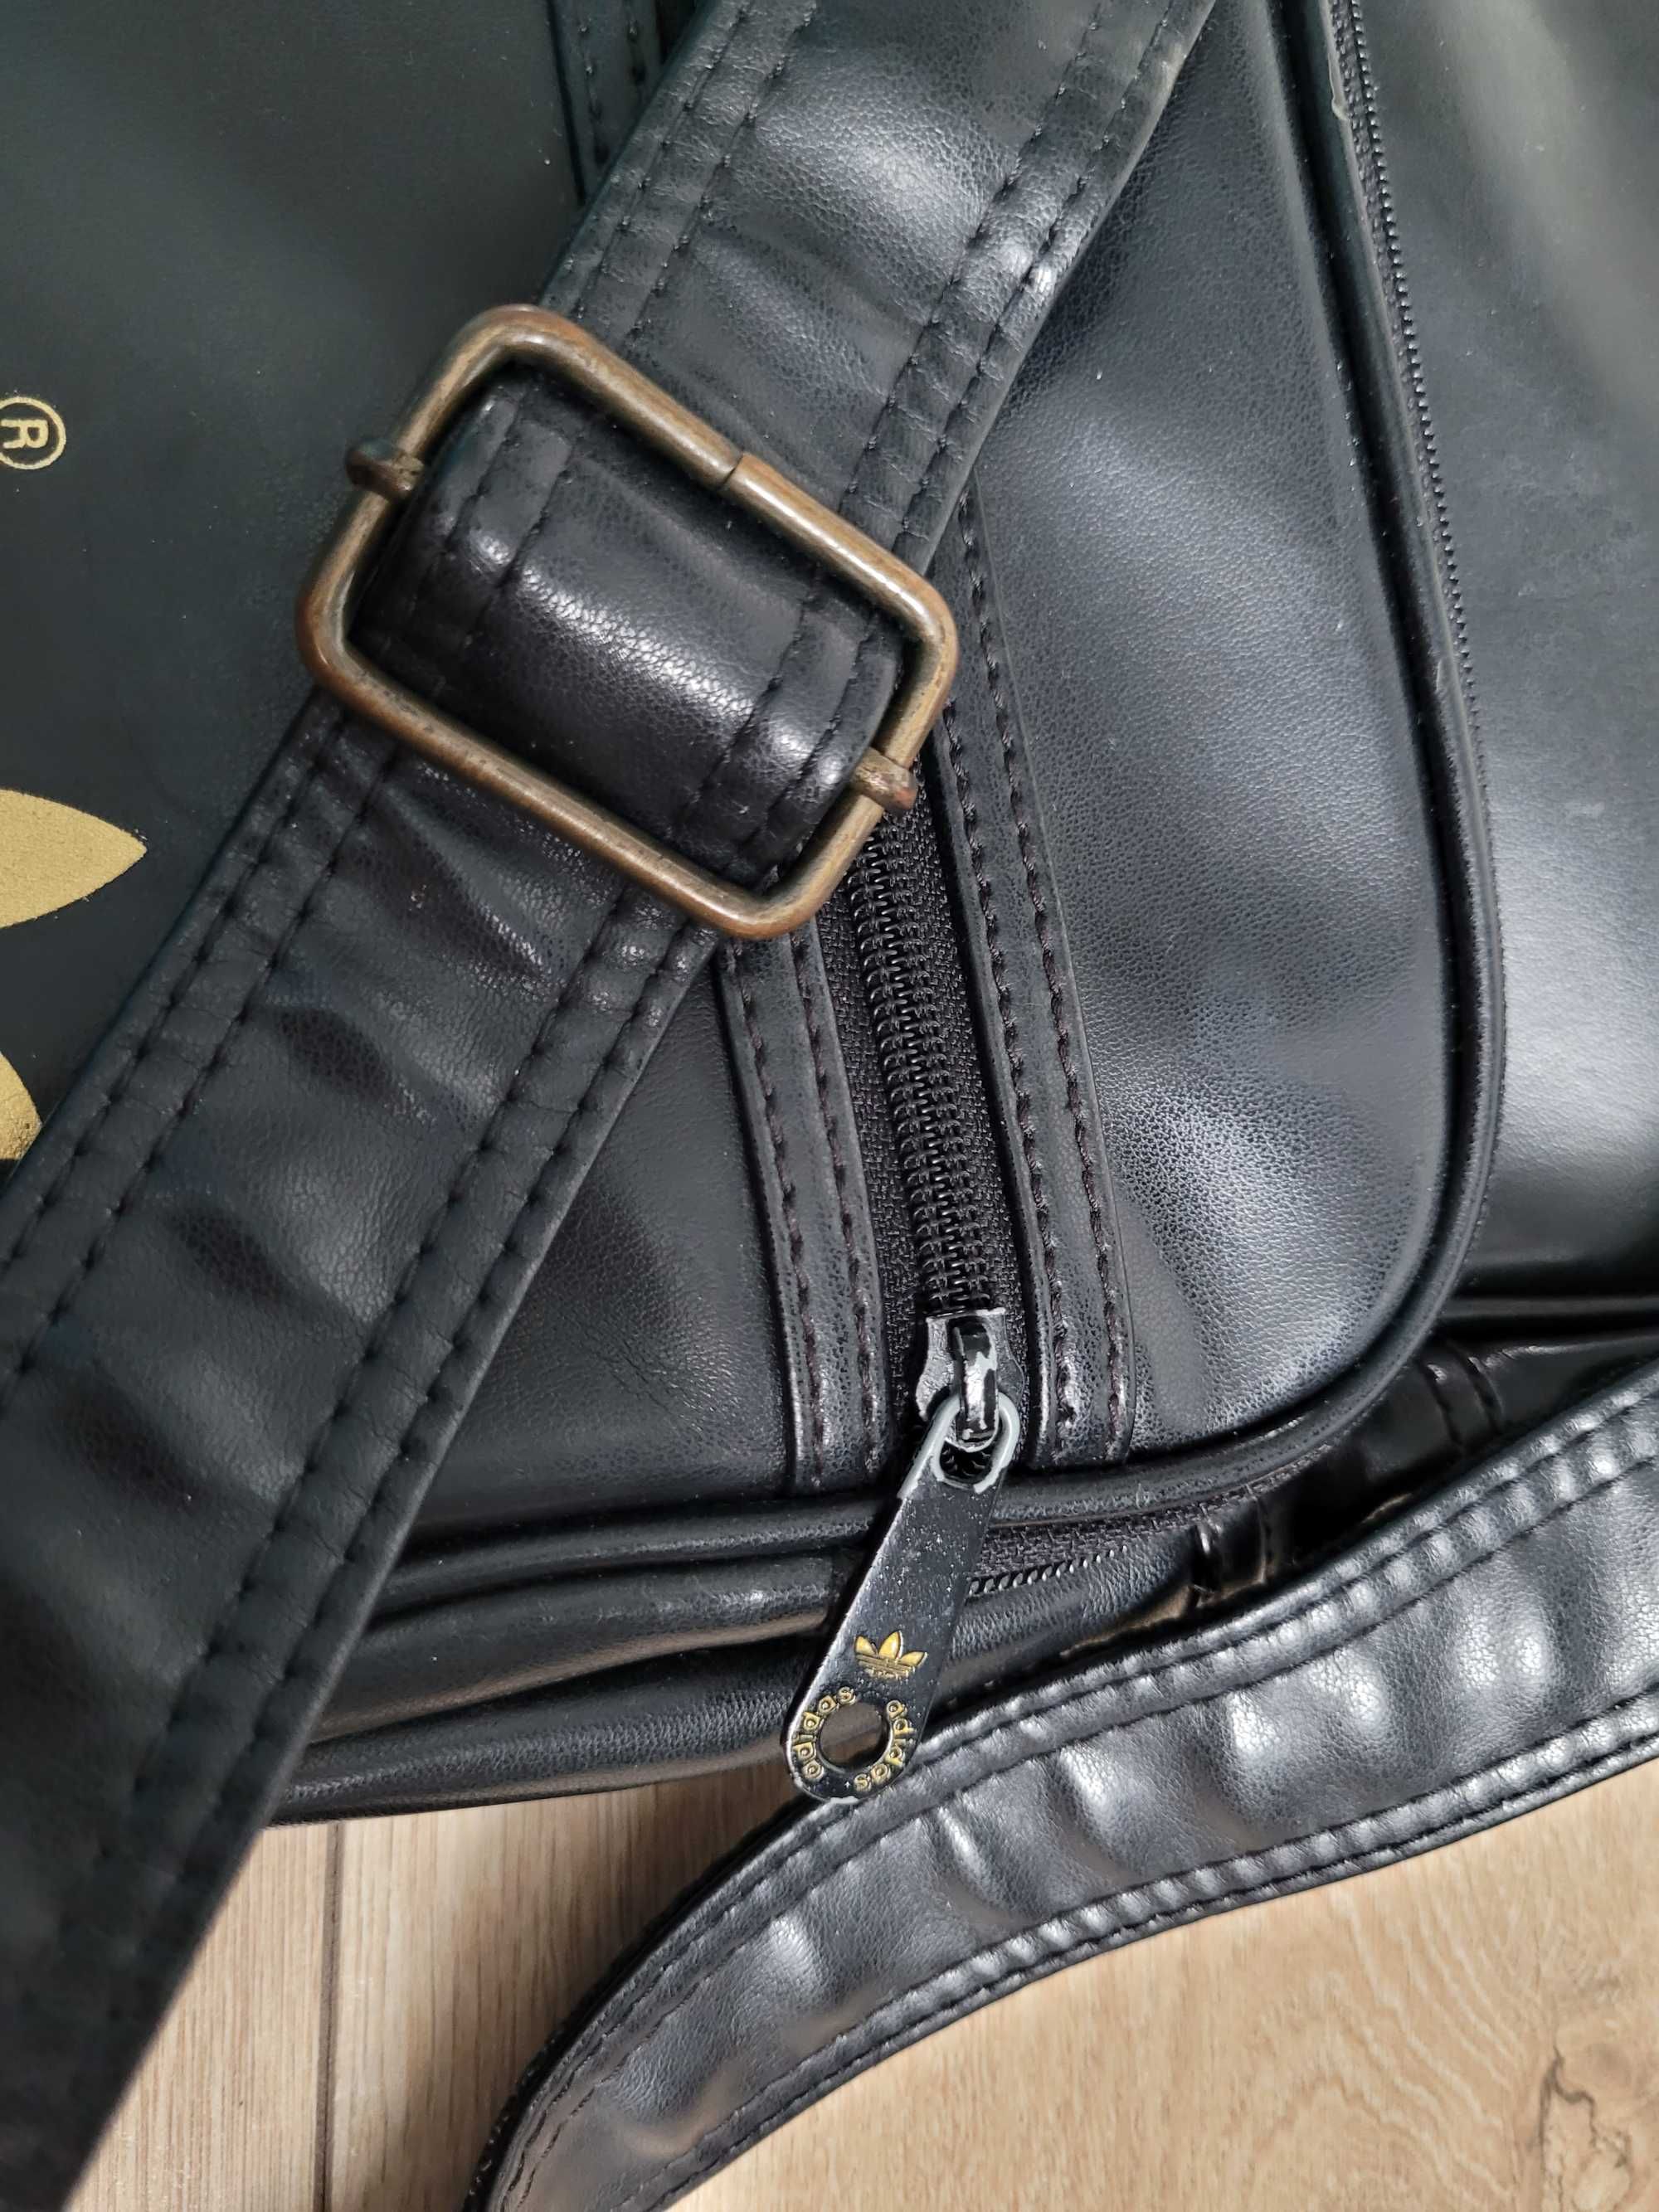 Duża torebka Adidas torba na ramię czarna złota